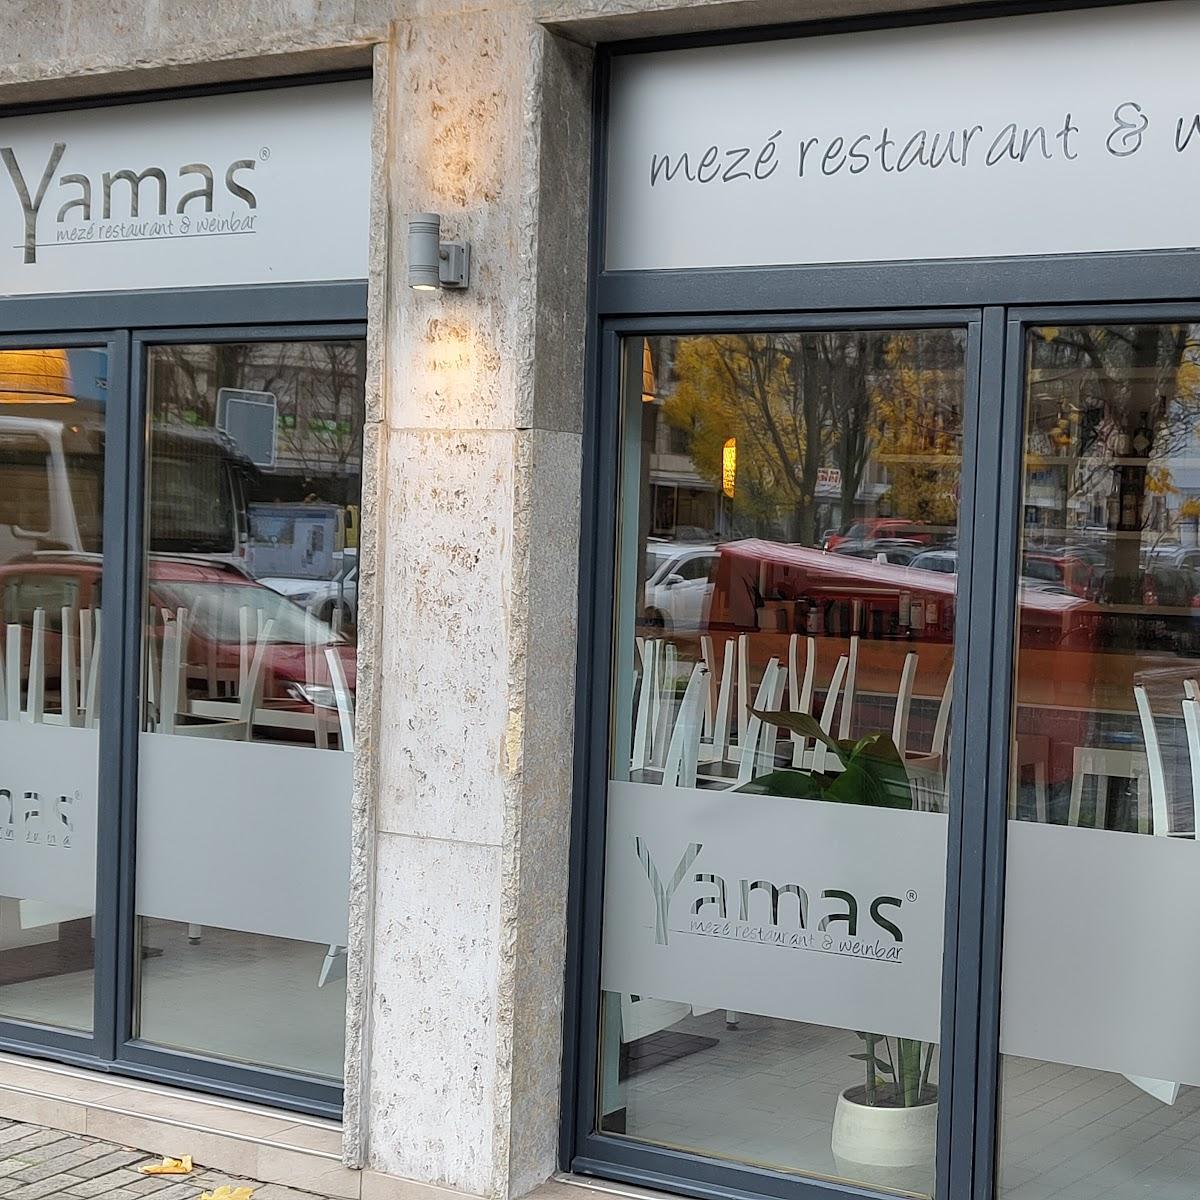 Restaurant "Yamas meze restaurant & weinbar" in Dortmund